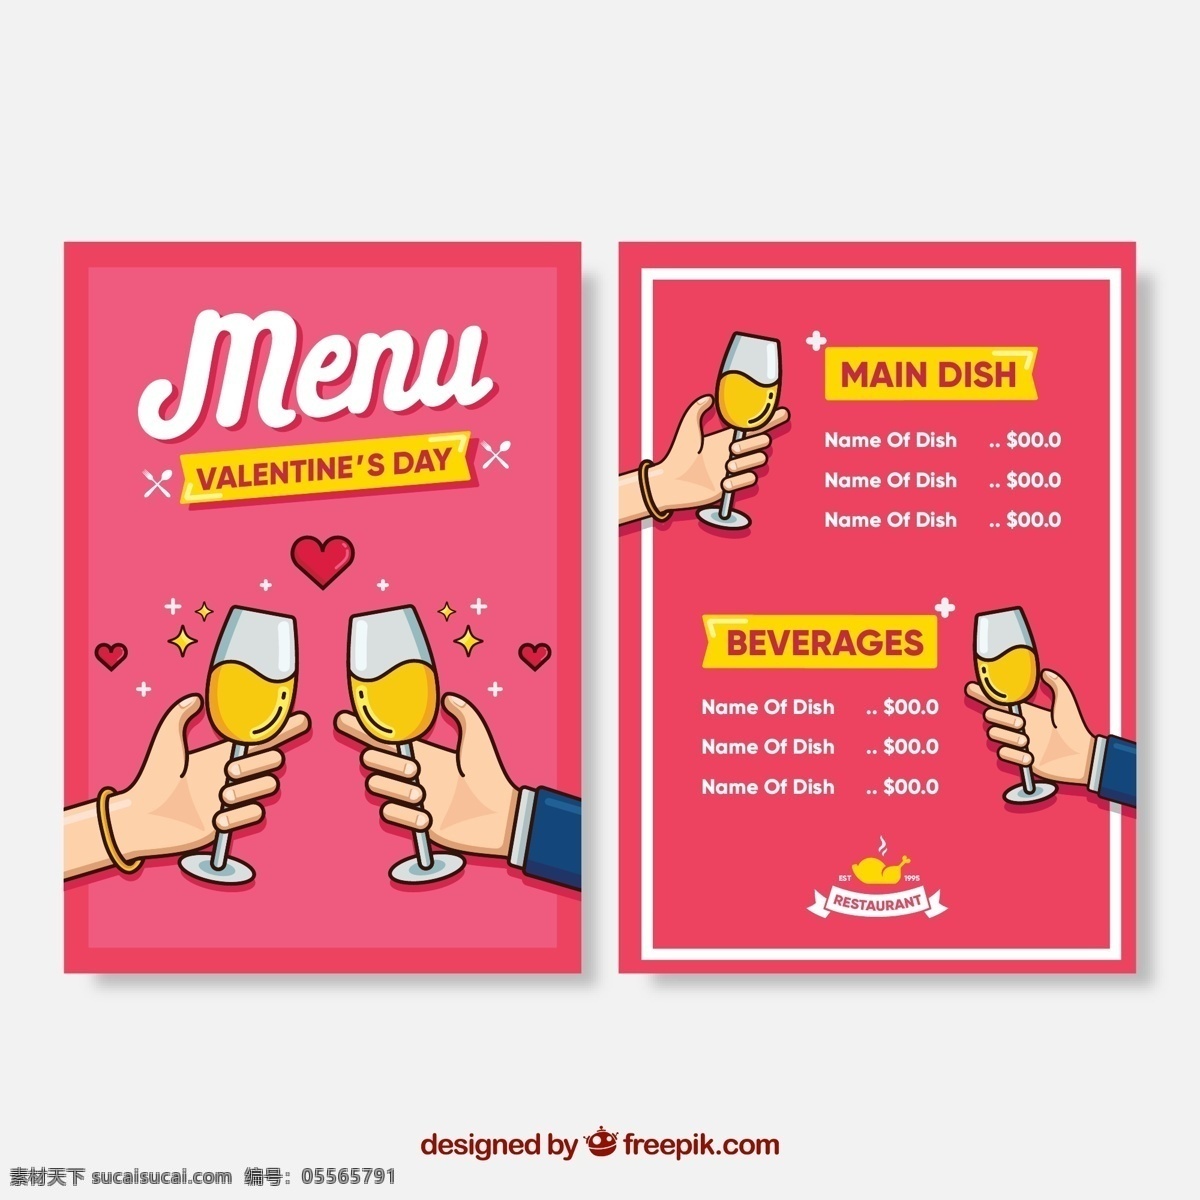 彩绘 碰杯 手臂 情人节 菜单 正反面 广告海报设计 菜单菜谱